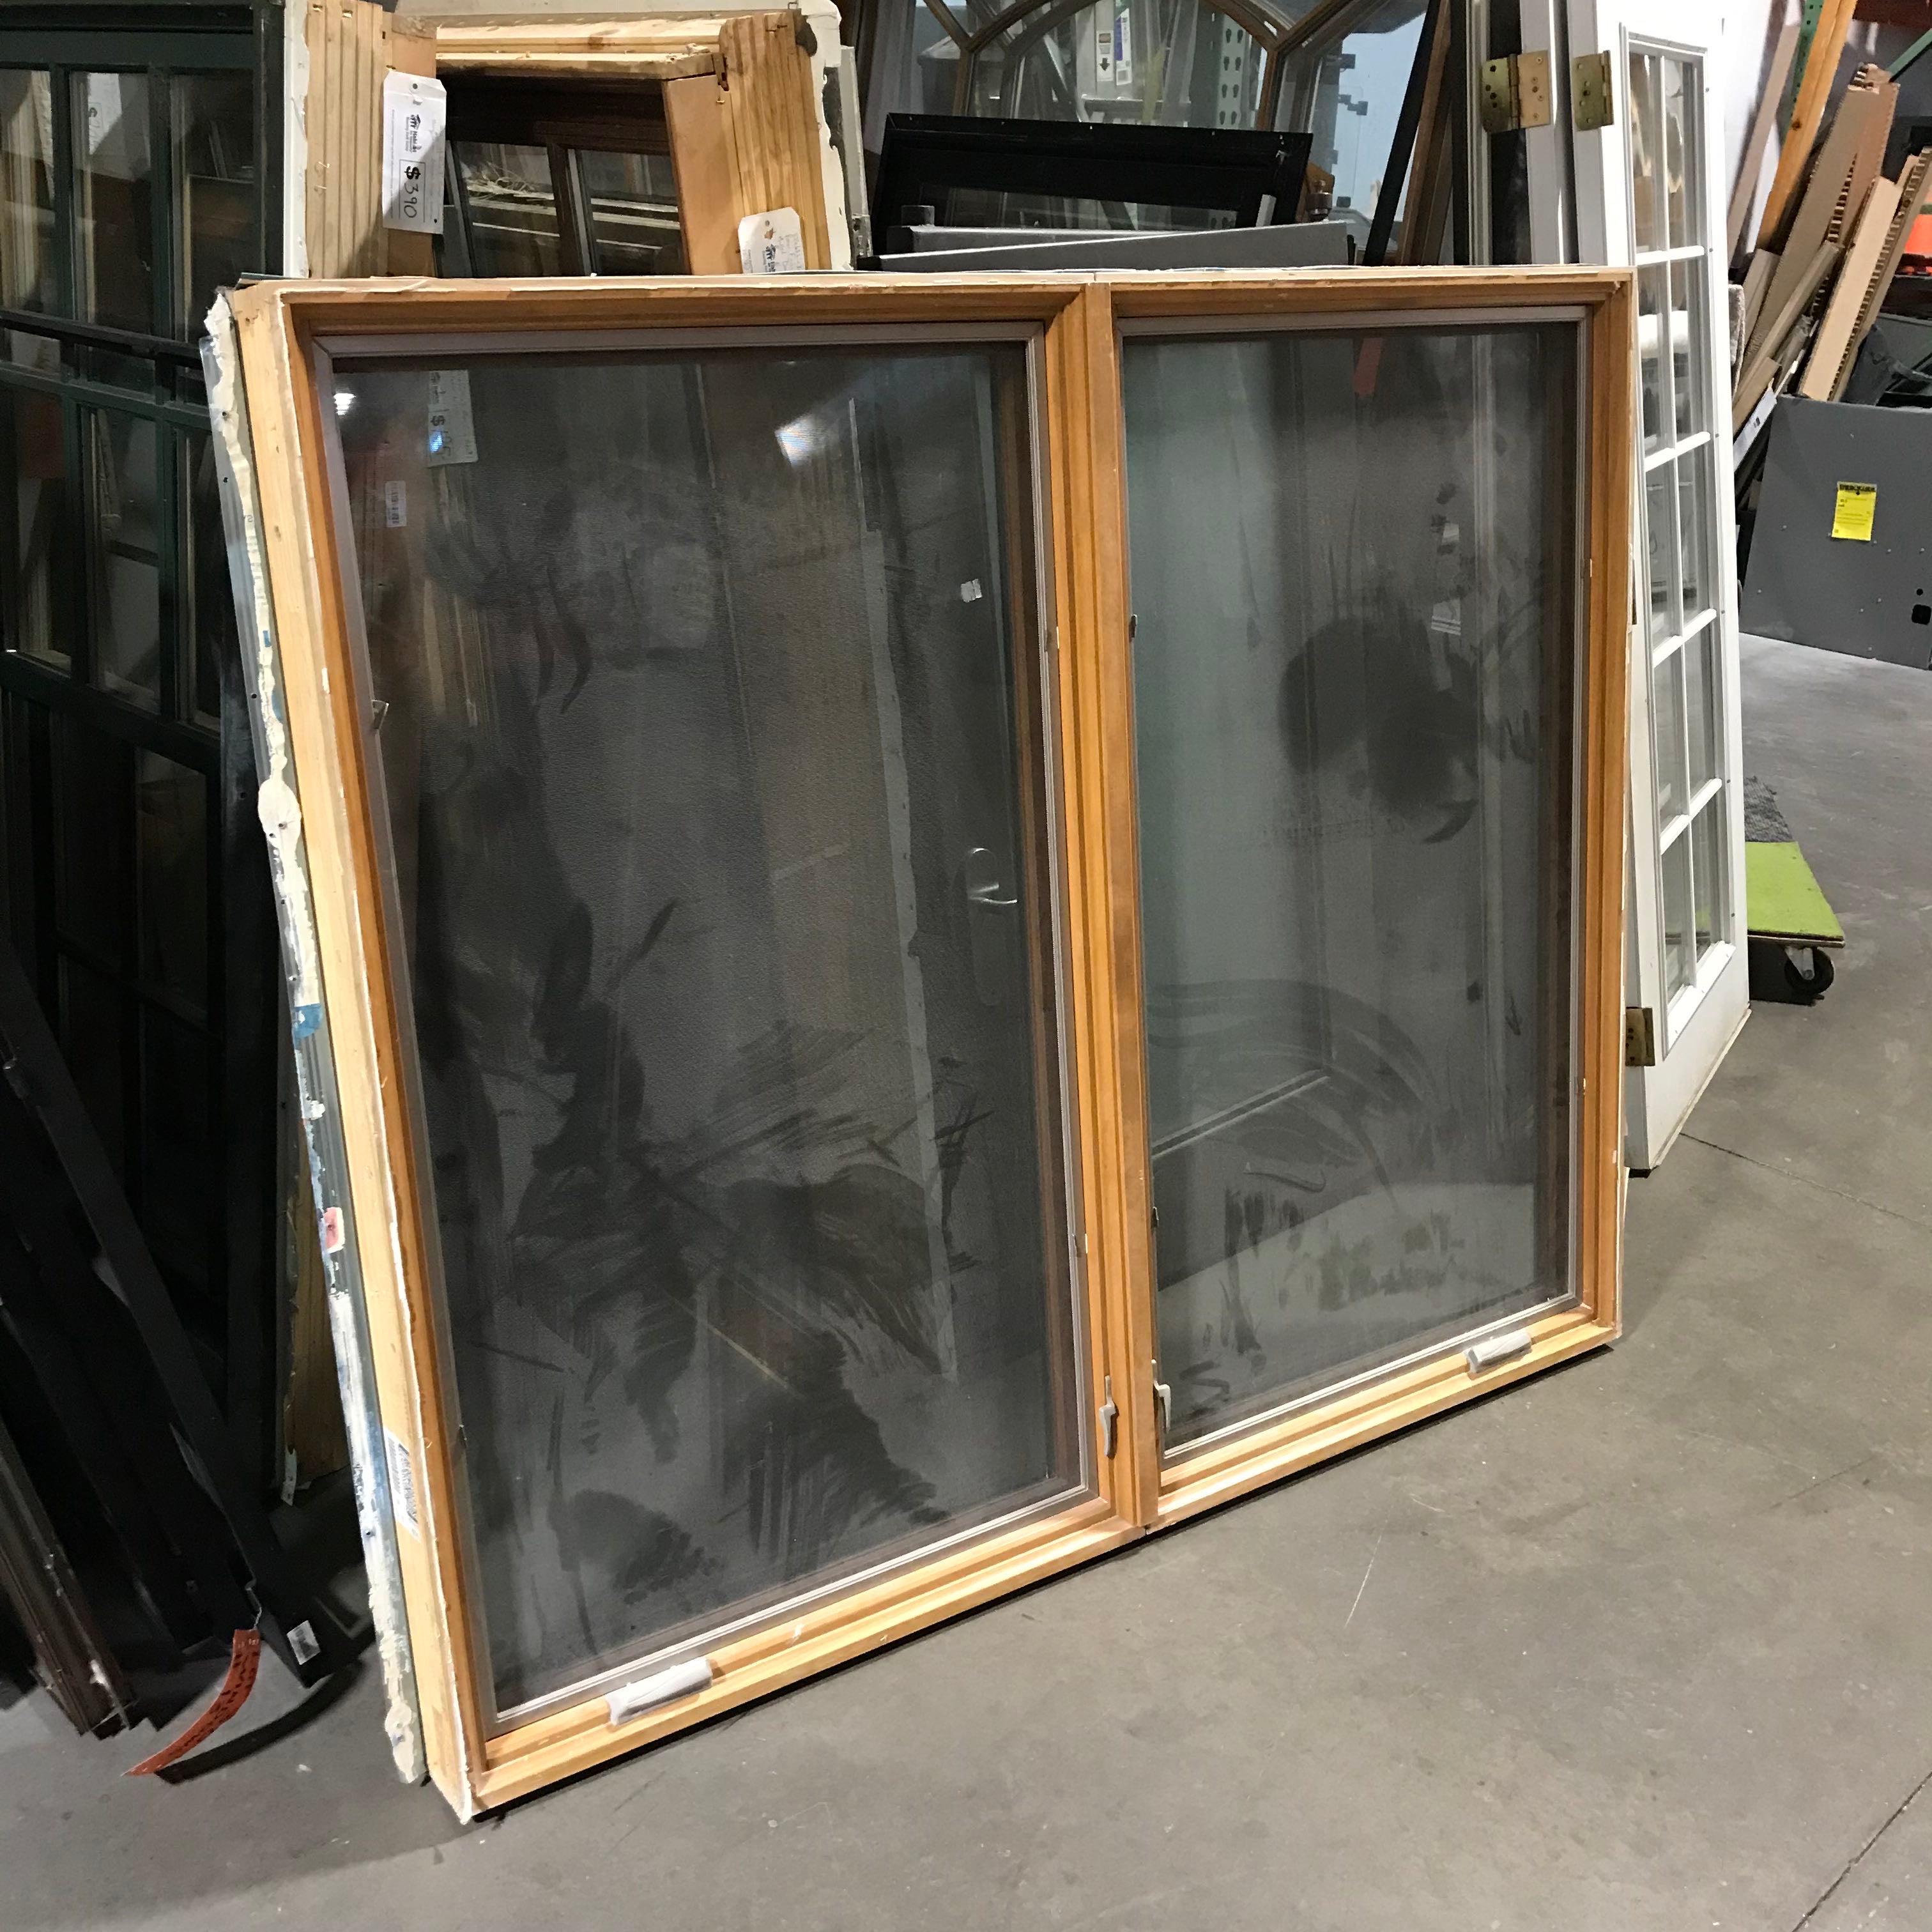 70"x 59"x 5" Tan Metal Clad Double Casement Exterior Window